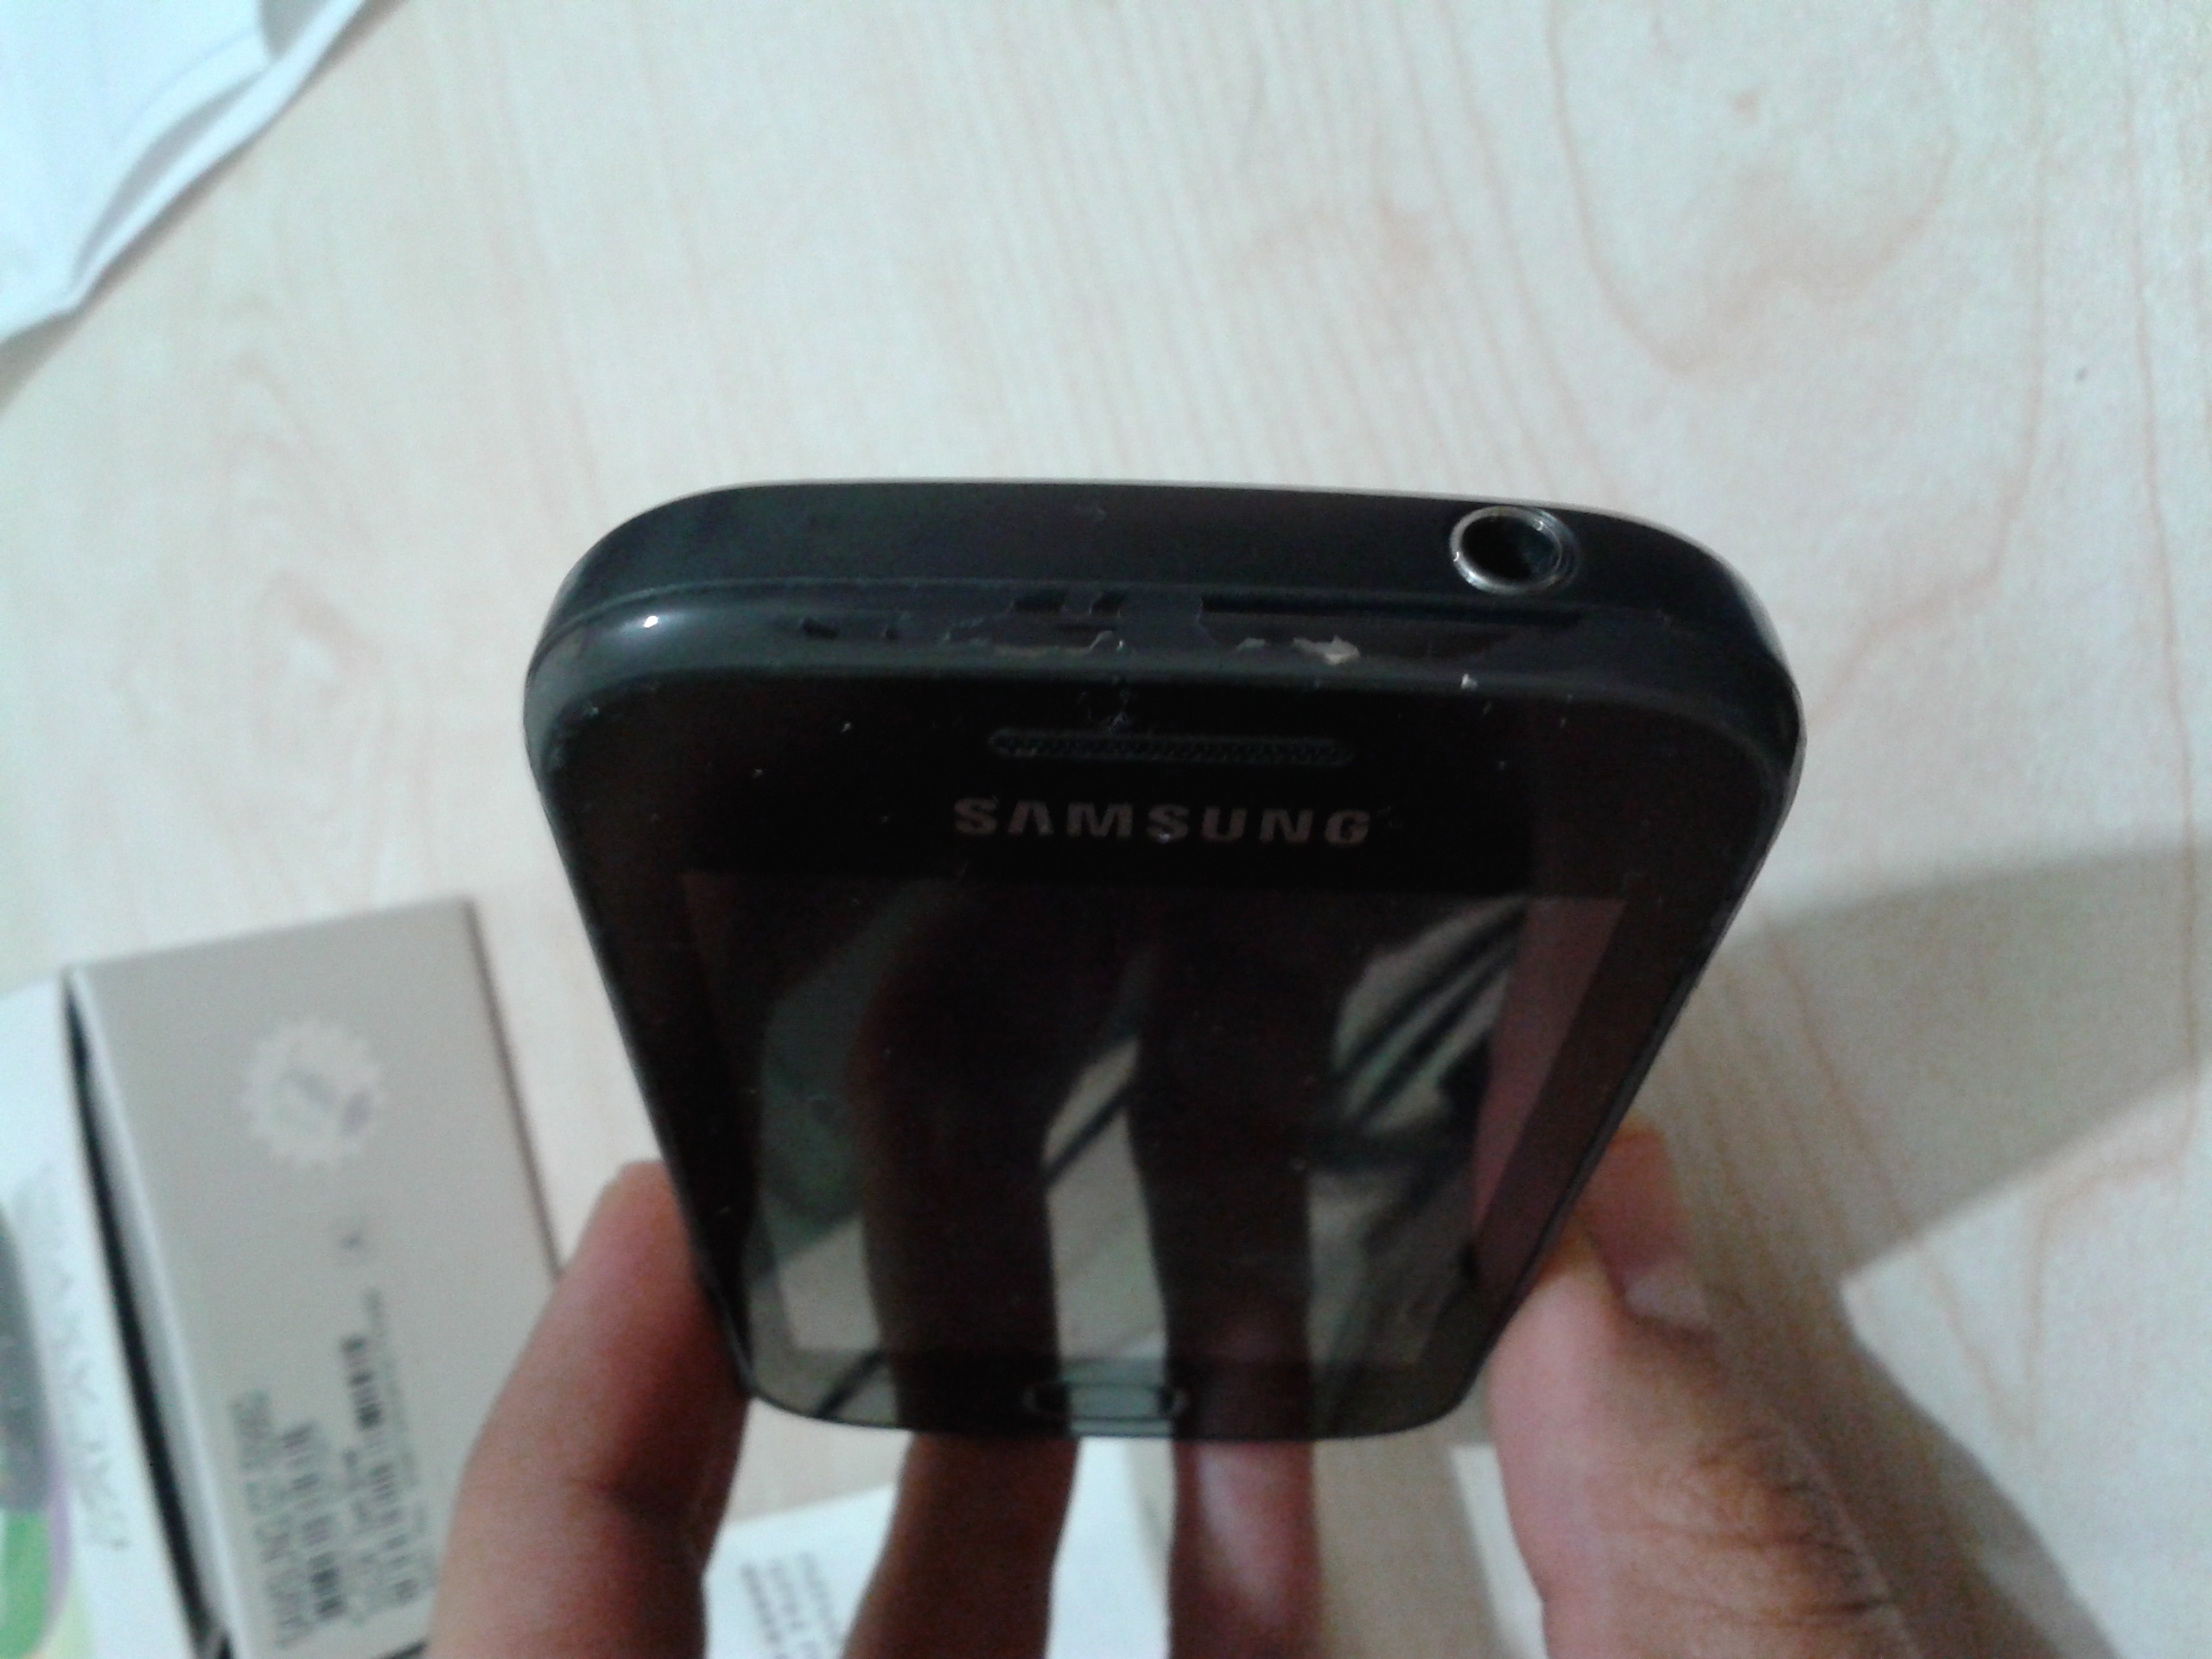  Samsung Galaxy Gio Satılık-- [Takas olur]